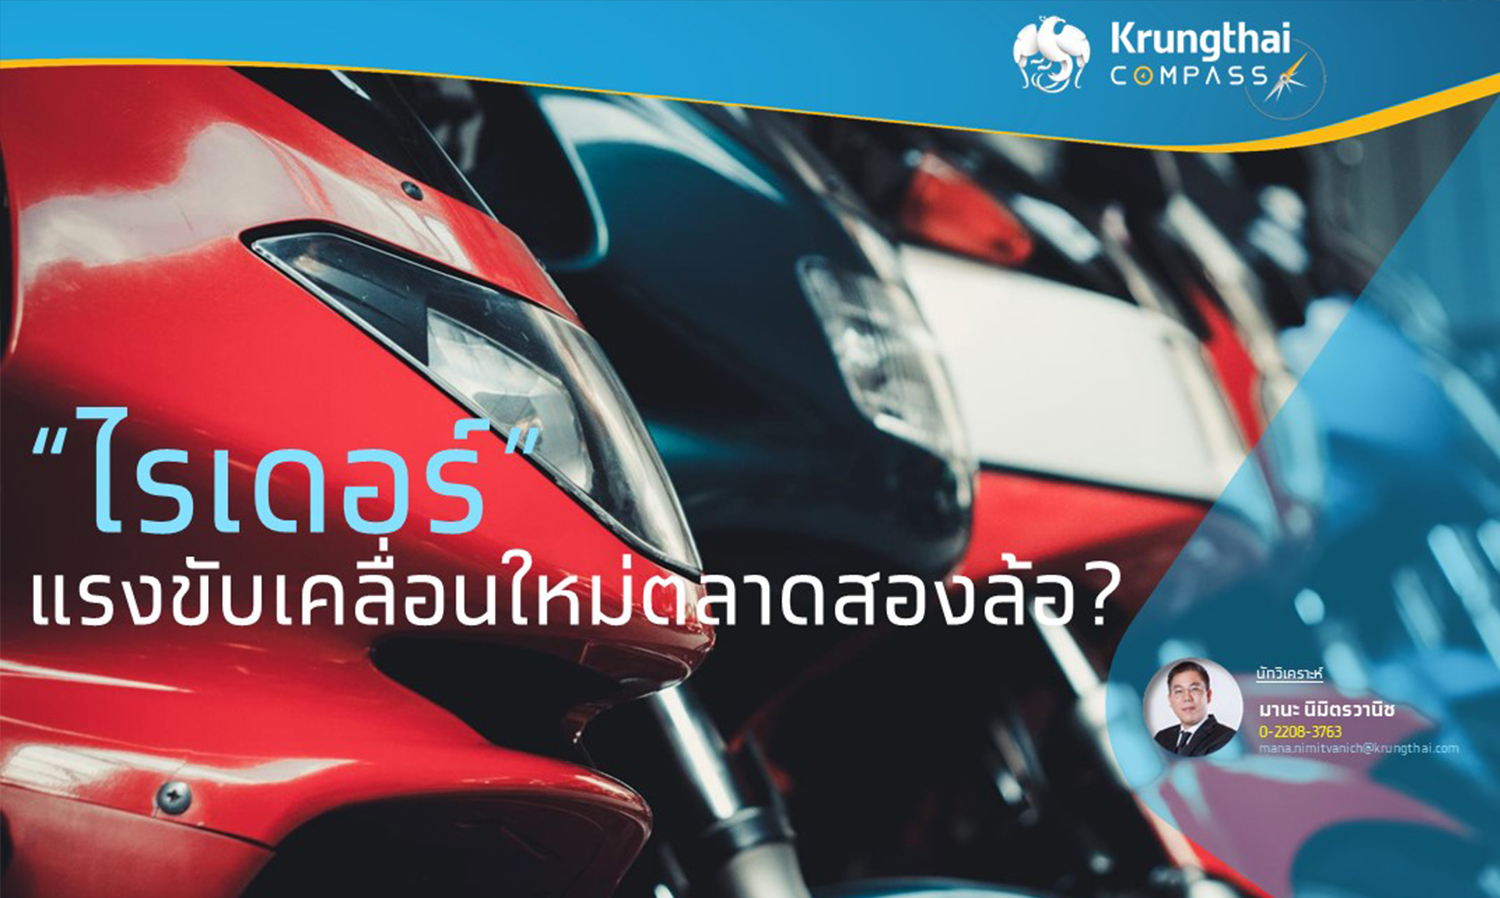 ไรเดอร์ แรงขับเคลื่อนใหม่ตลาดสองล้อ โดย Krungthai COMPASS